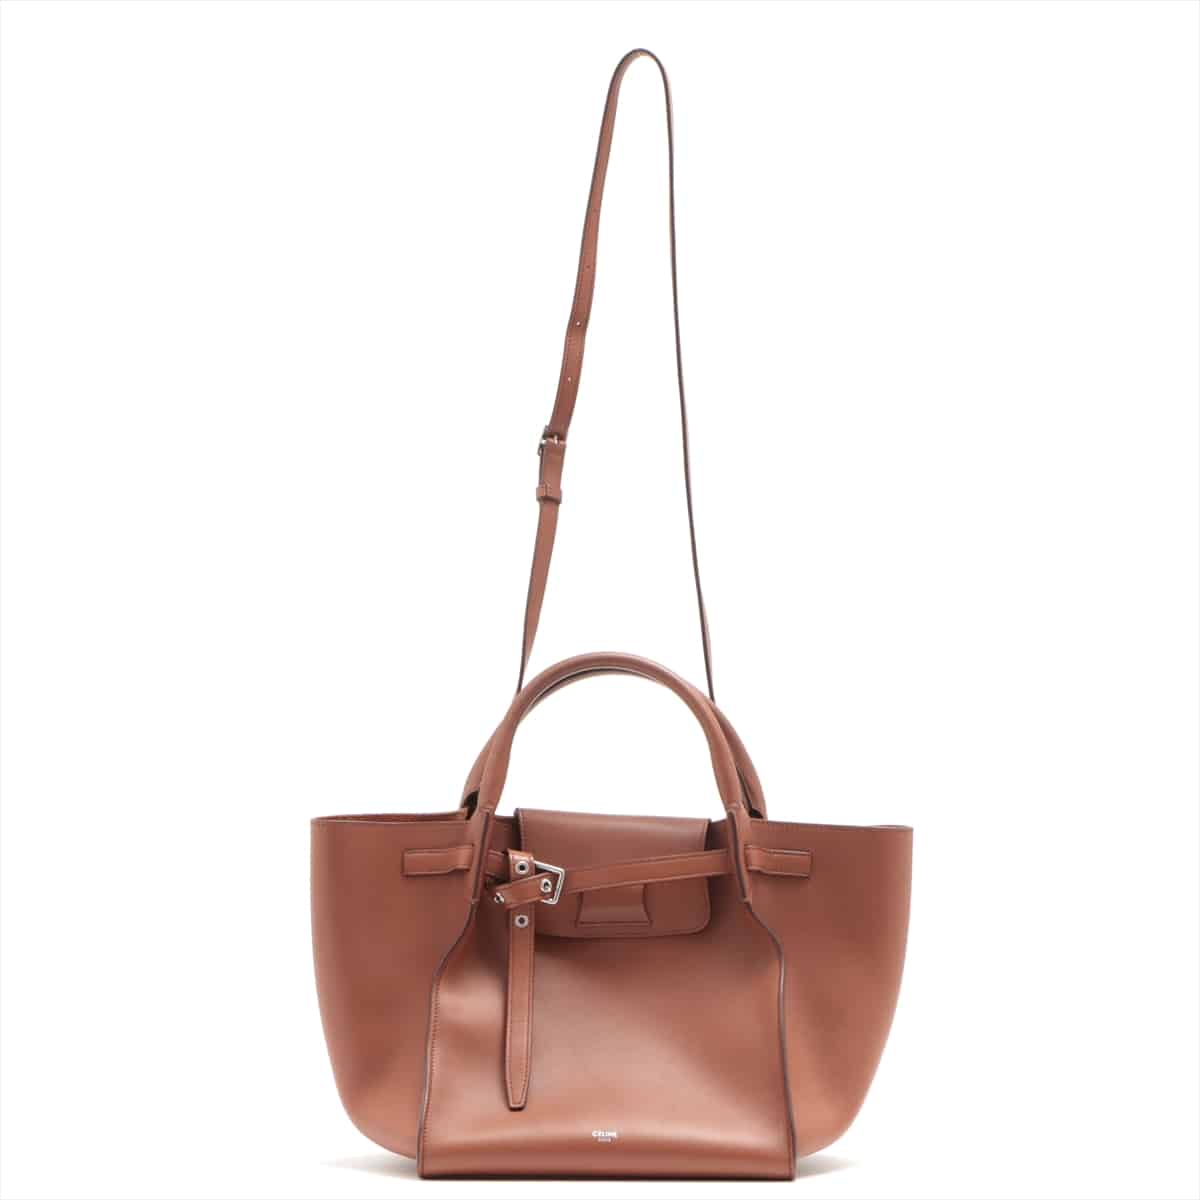 CELINE BIG BAG small Leather 2way handbag Brown